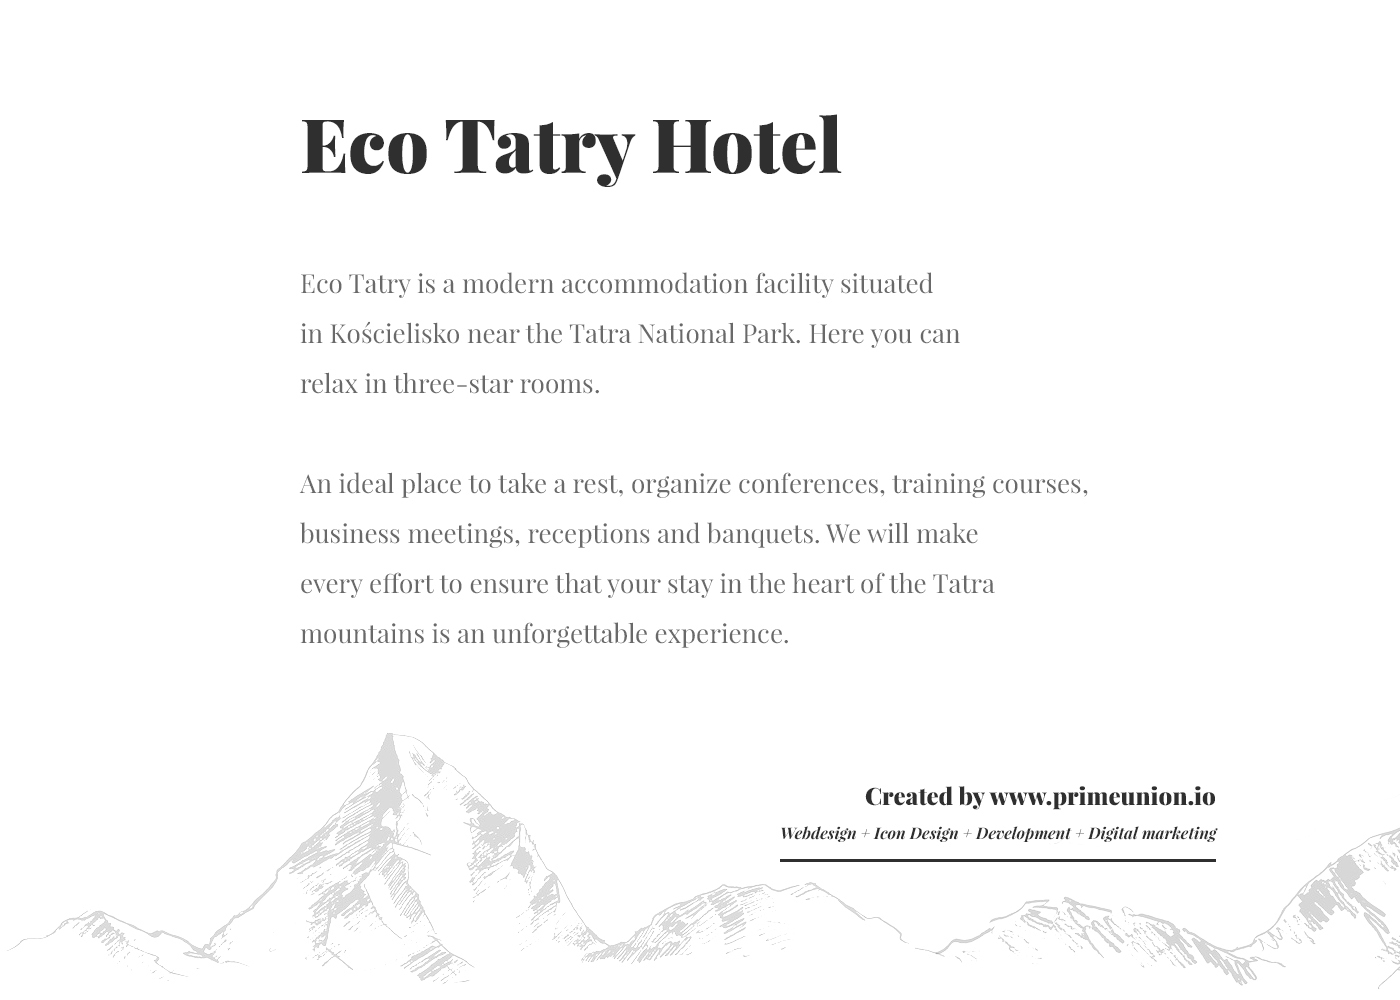 sokol hotel Responsive Website poland prime union mountains tatra